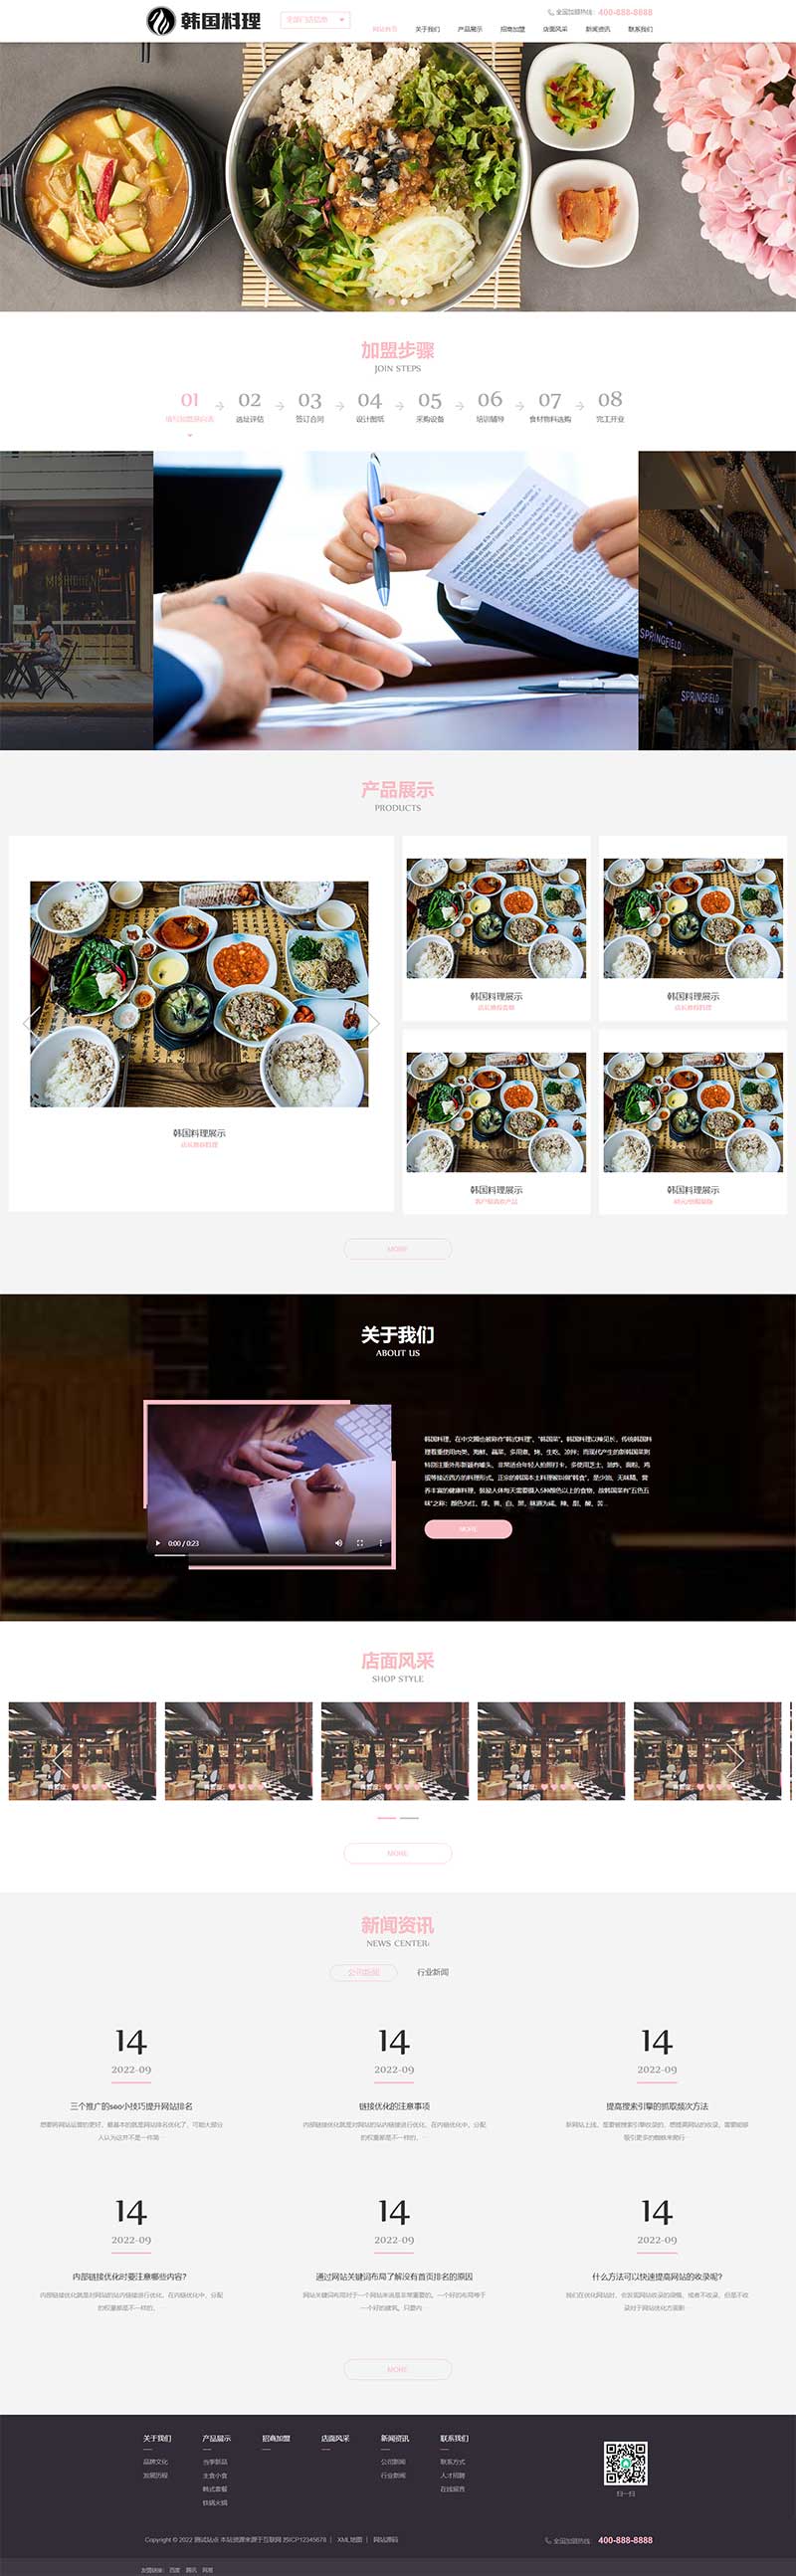 餐饮美食小吃连锁店网站模板 HTML5韩国料理加盟网站源码下载